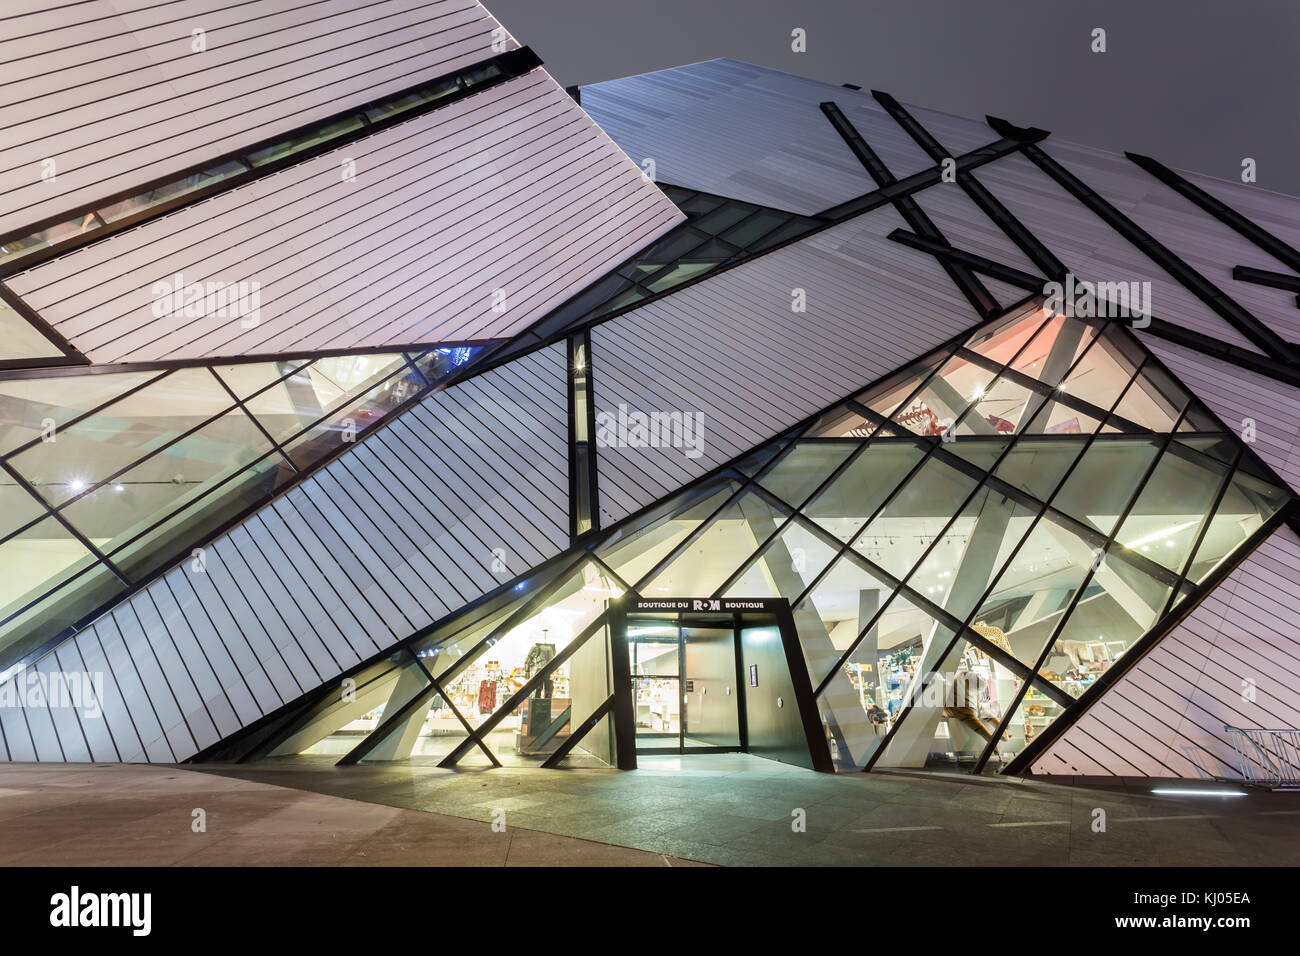 Toronto, Canada - oct 13, 2017 : extérieur du Musée royal de l'Ontario (ROM) est éclairée la nuit. ville de Toronto, Canada Banque D'Images